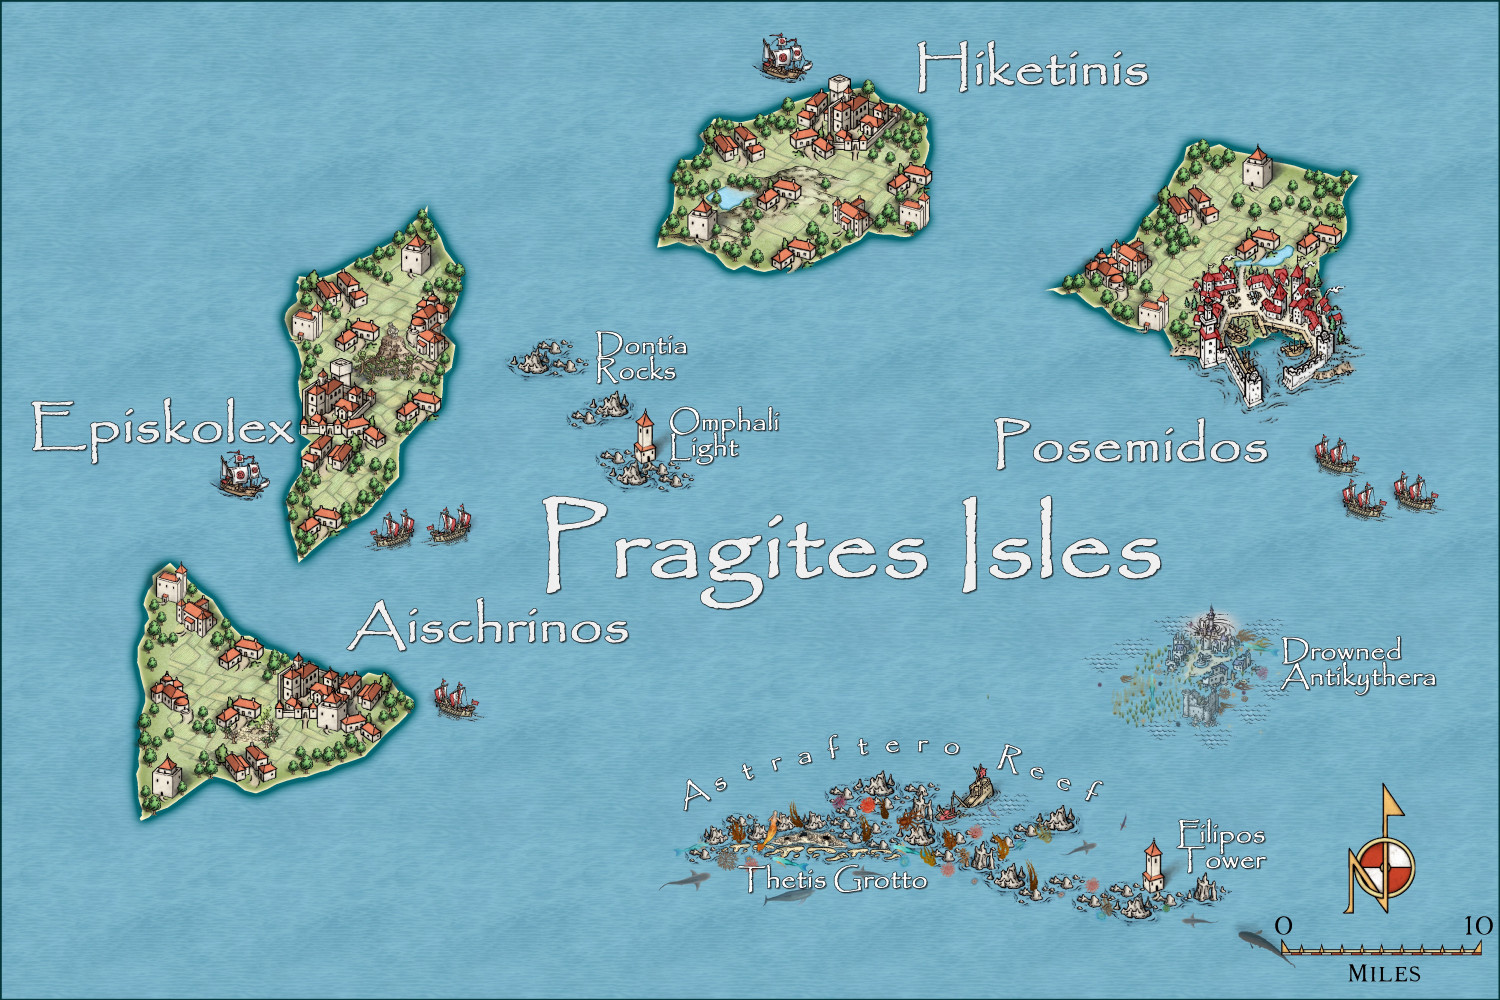 Pragites Isles.JPG